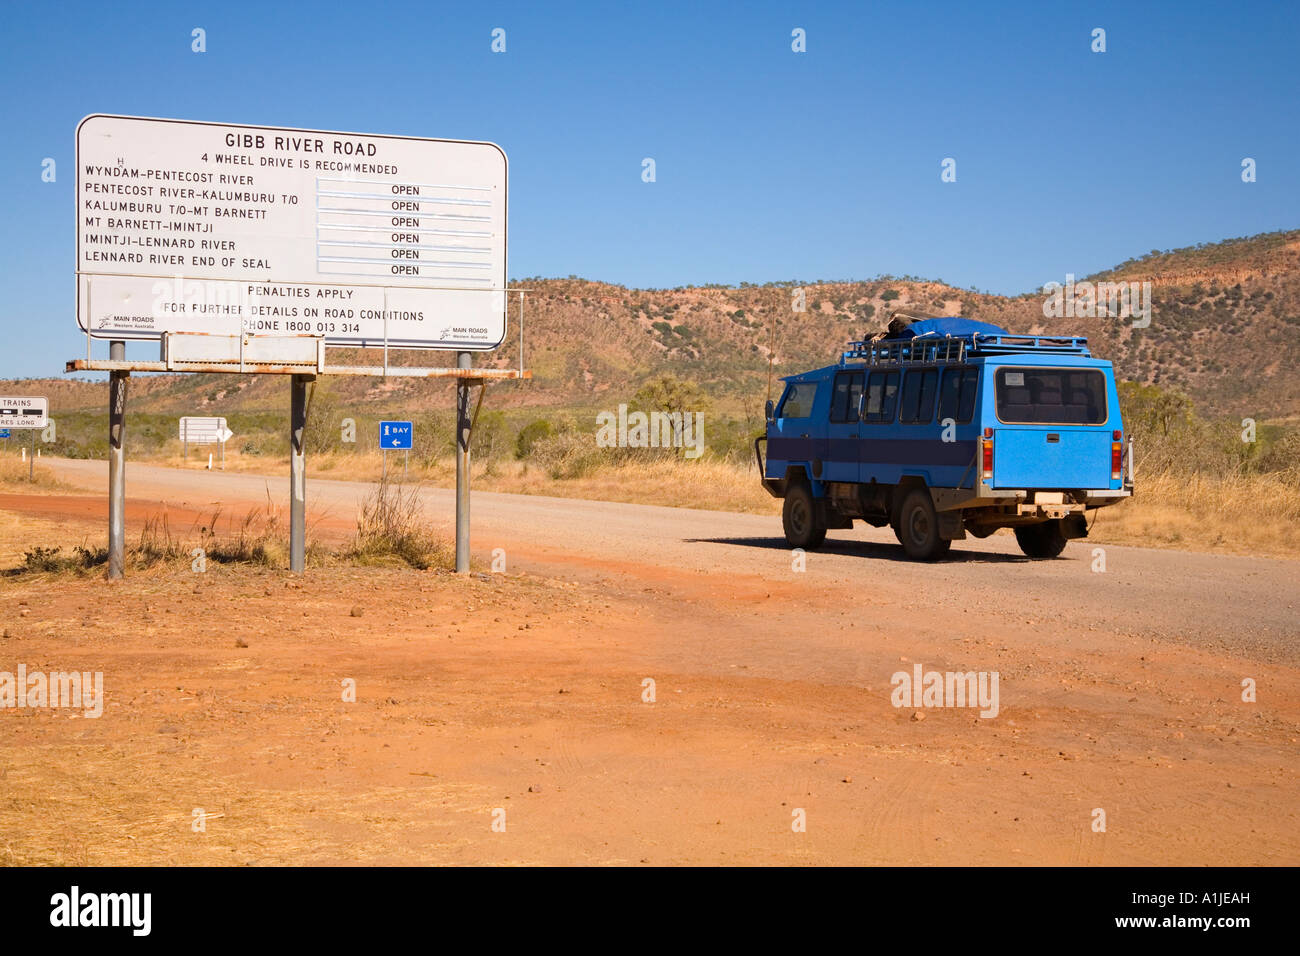 4 x 4 Touristenbus Eingabe Gibb River Road, West-Australien Stockfoto